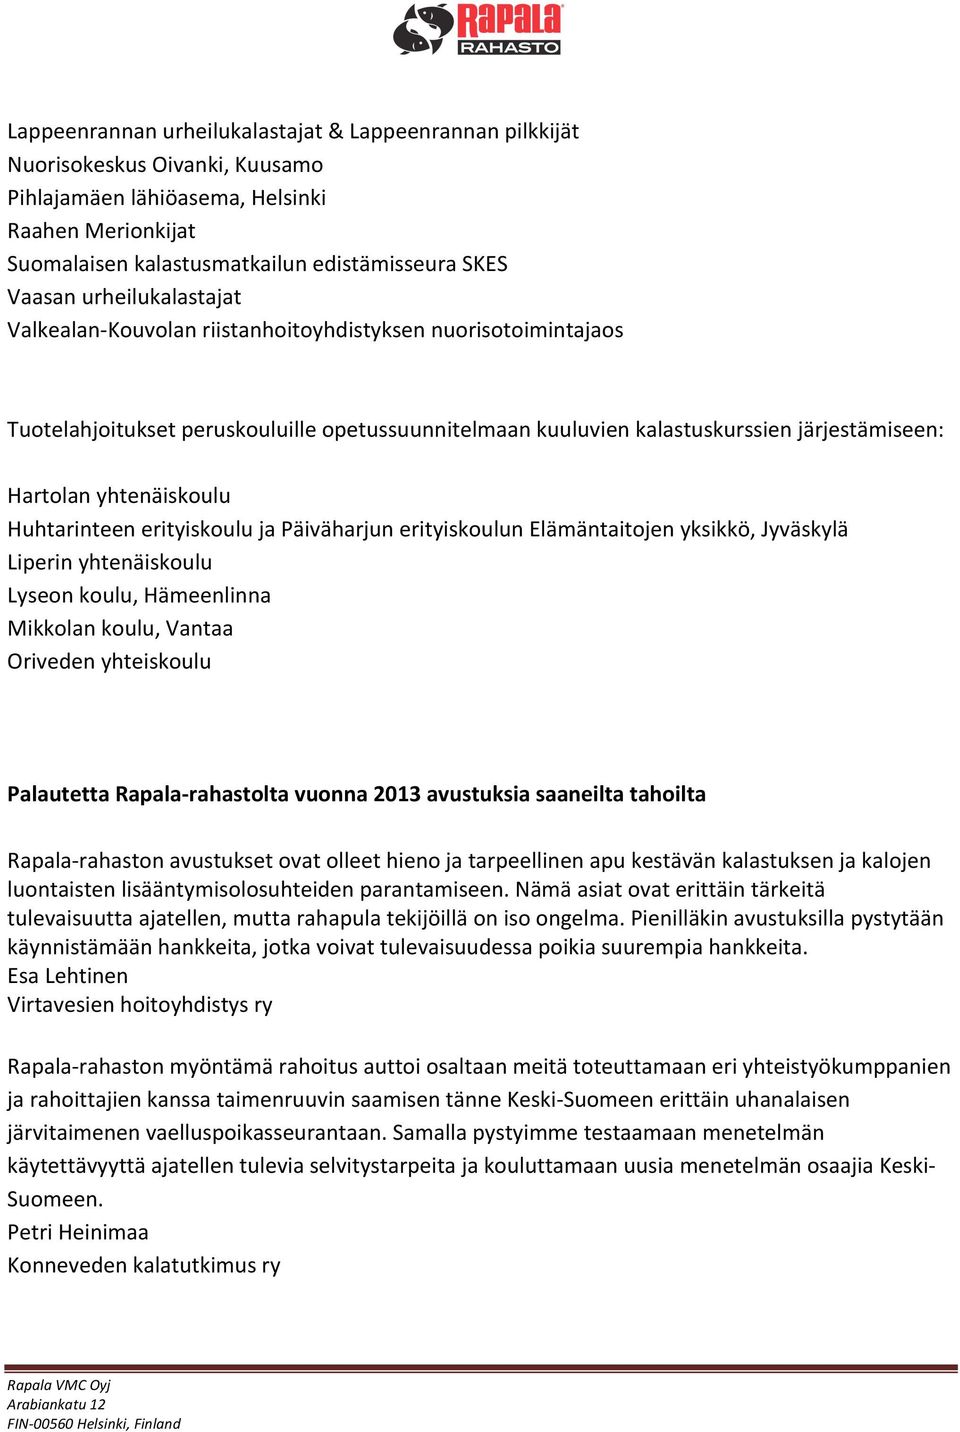 yhtenäiskoulu Huhtarinteen erityiskoulu ja Päiväharjun erityiskoulun Elämäntaitojen yksikkö, Jyväskylä Liperin yhtenäiskoulu Lyseon koulu, Hämeenlinna Mikkolan koulu, Vantaa Oriveden yhteiskoulu